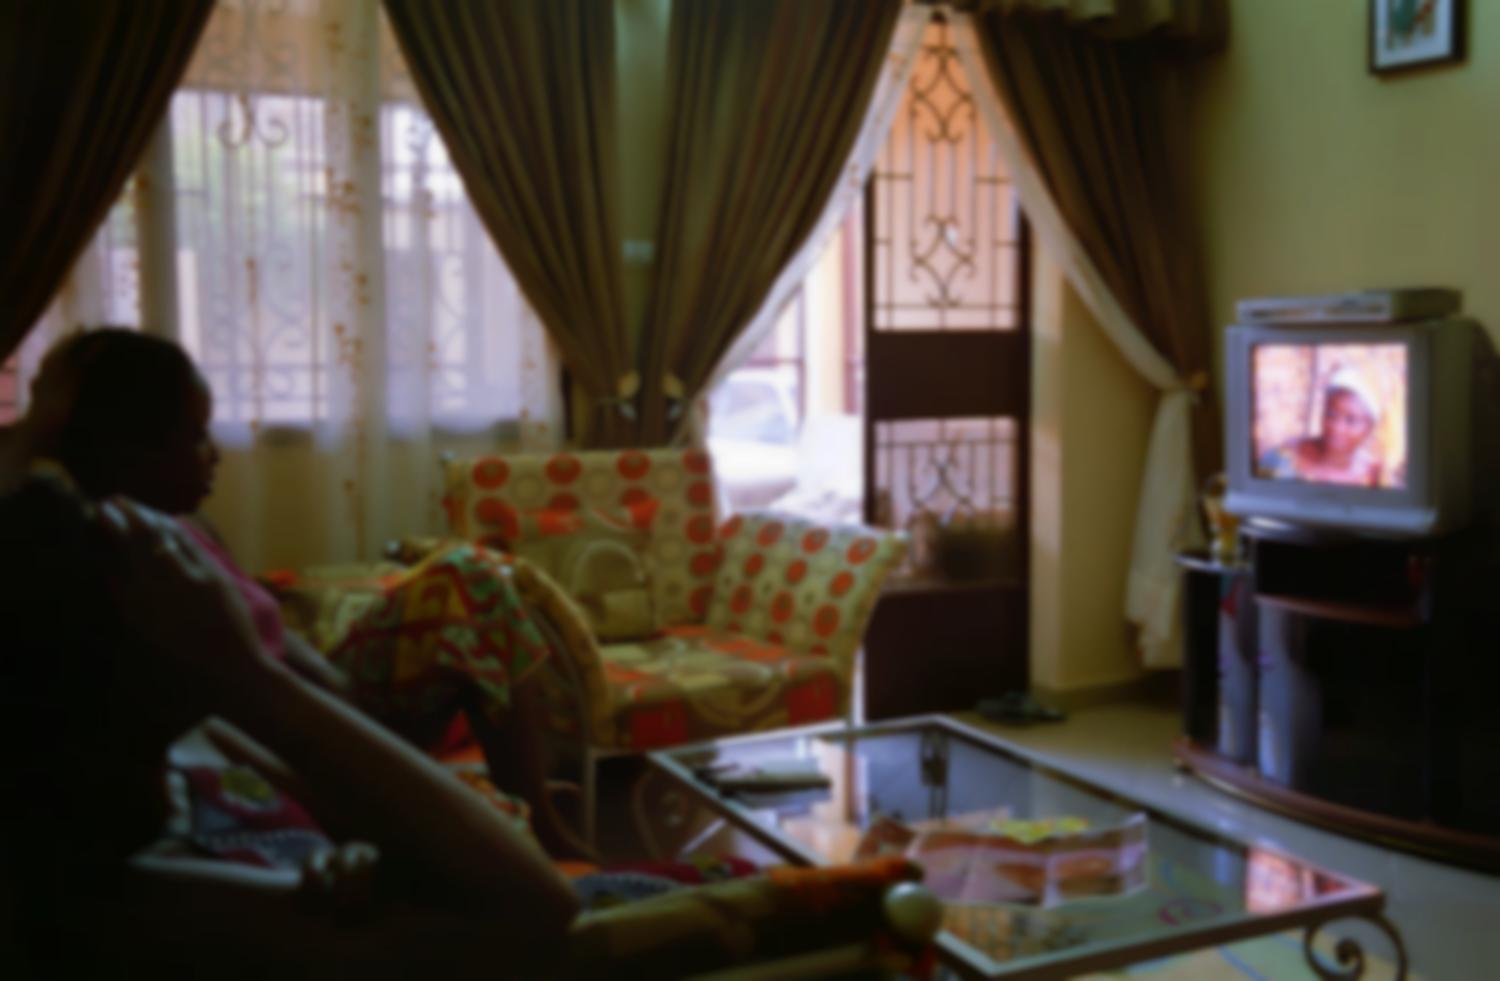 Jeanne dans son salon, assise sur le canapé près de son amie Laure, regarde la vidéo d'une série dans laquelle elles ont joué toutes les deux. Ouagadougou, Burkina Faso, juin 2008.